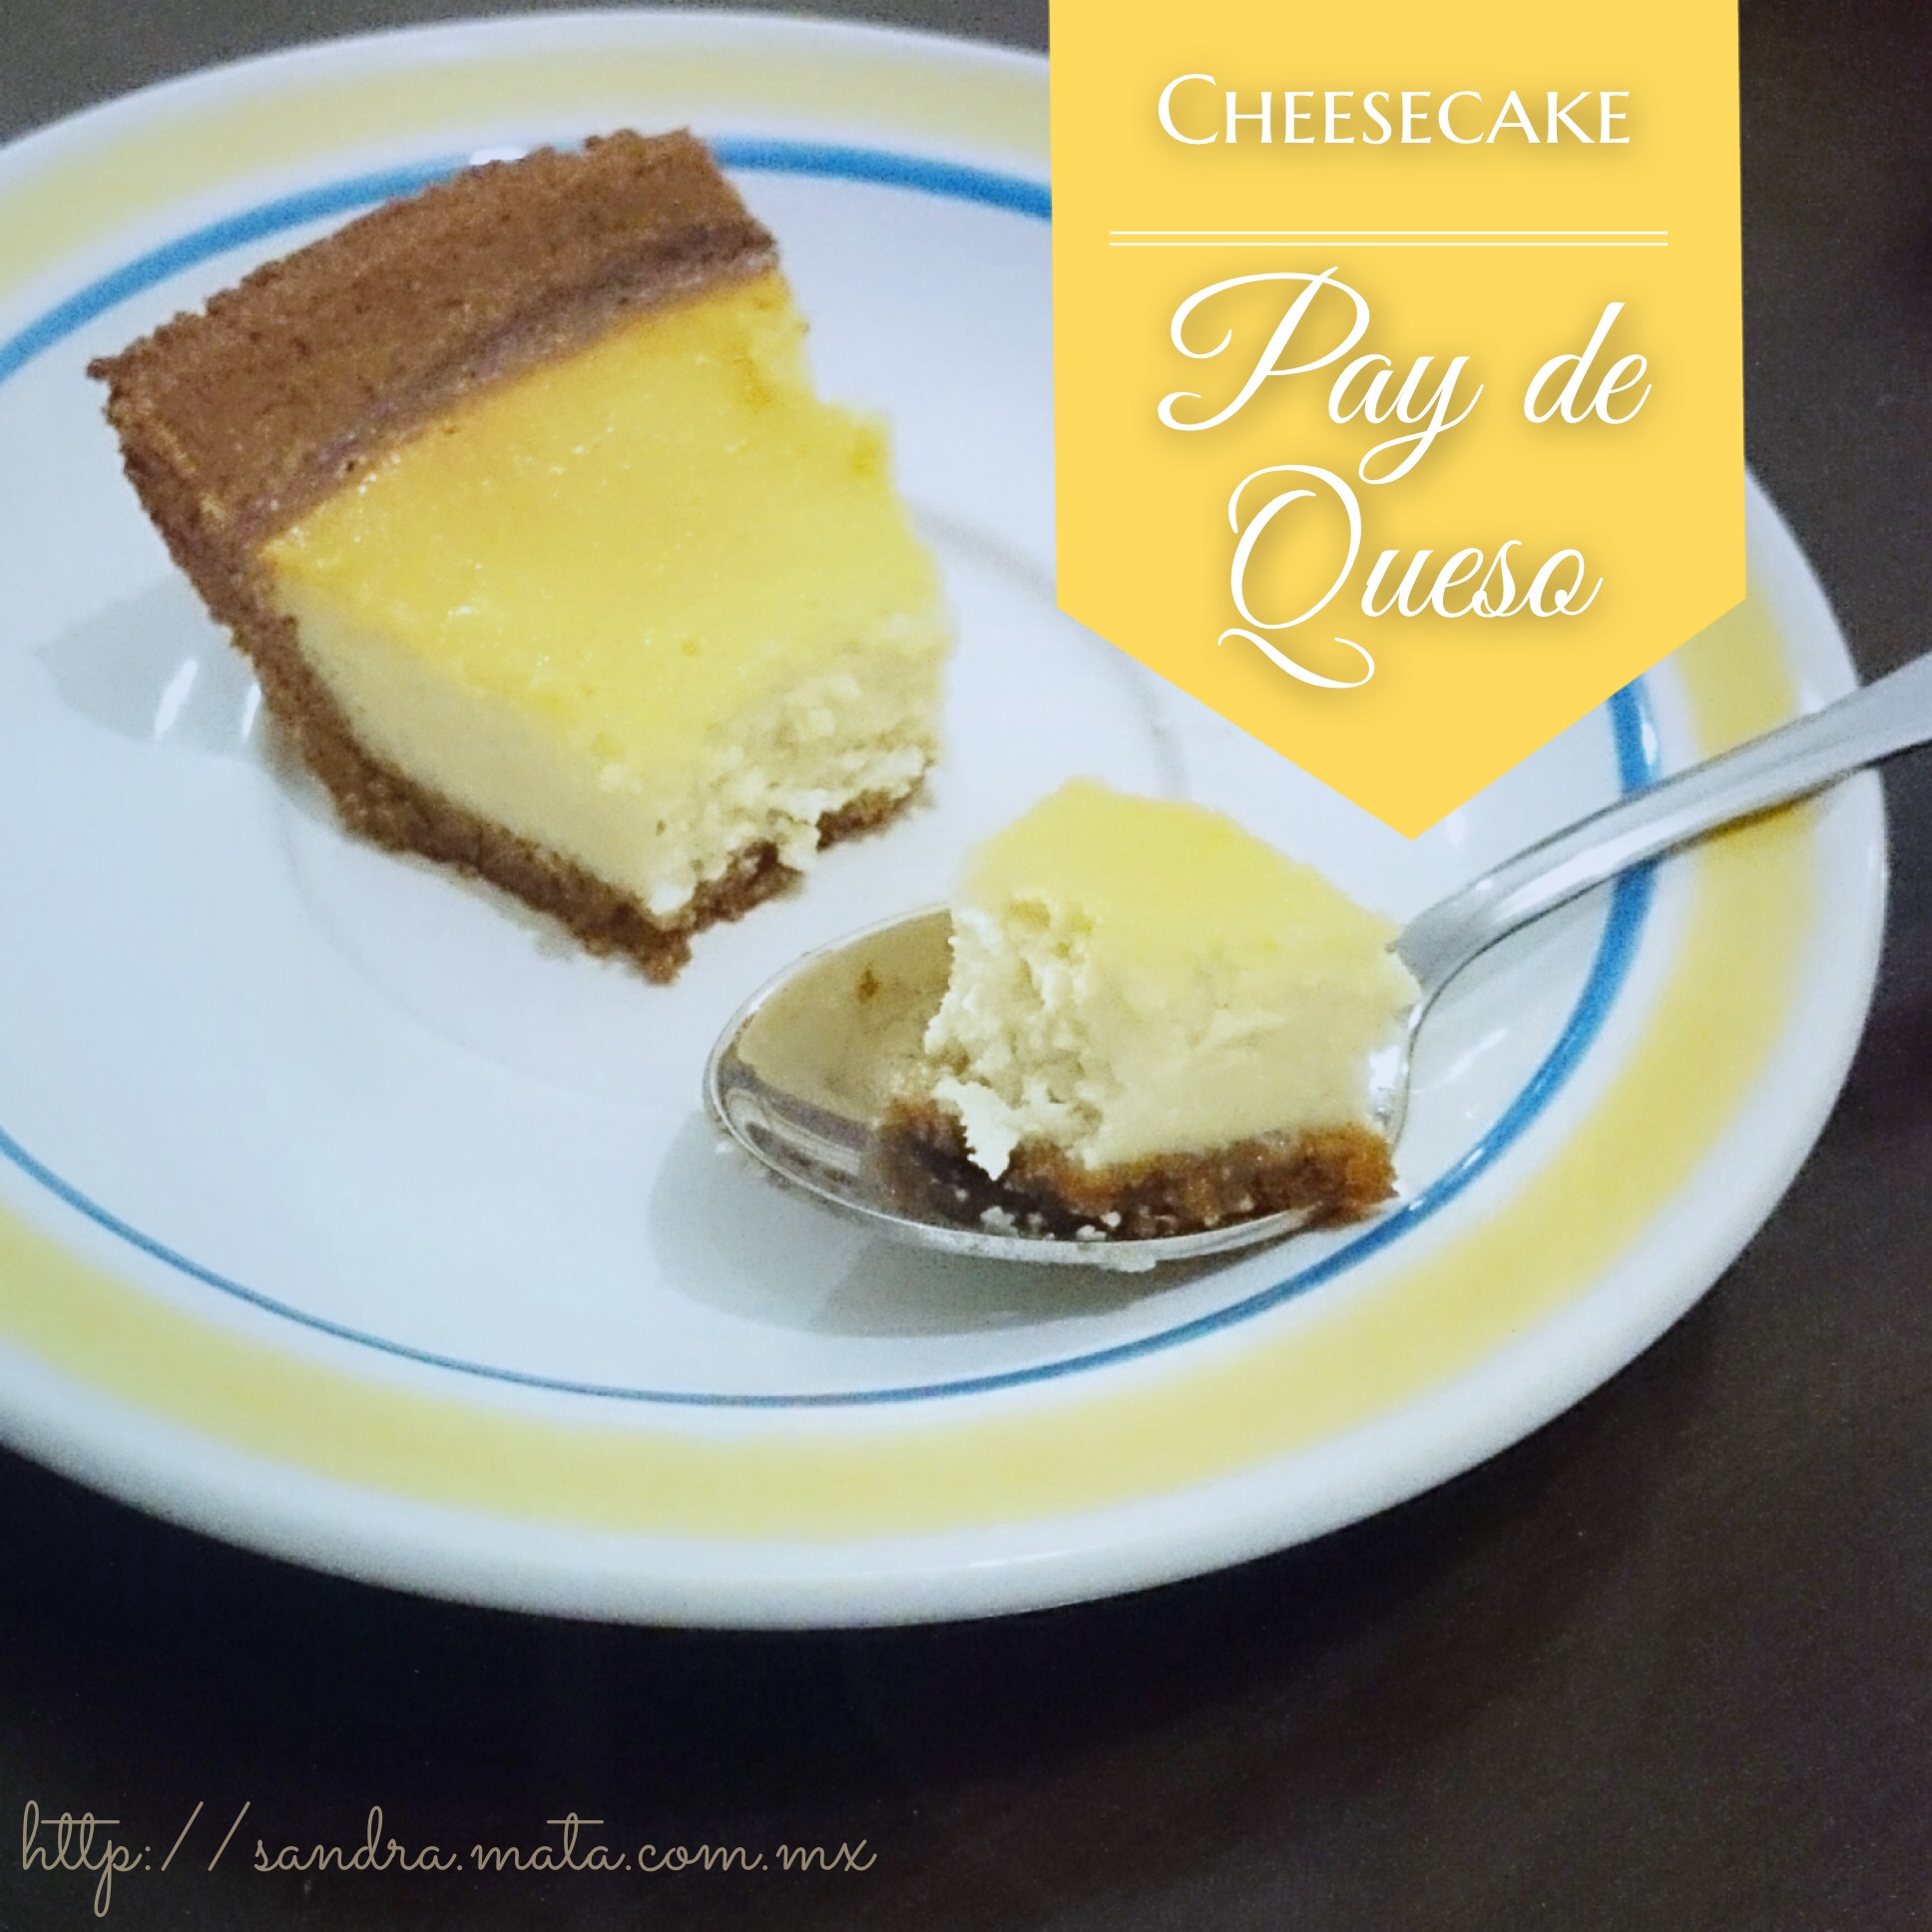 Pay de queso / Cheesecake